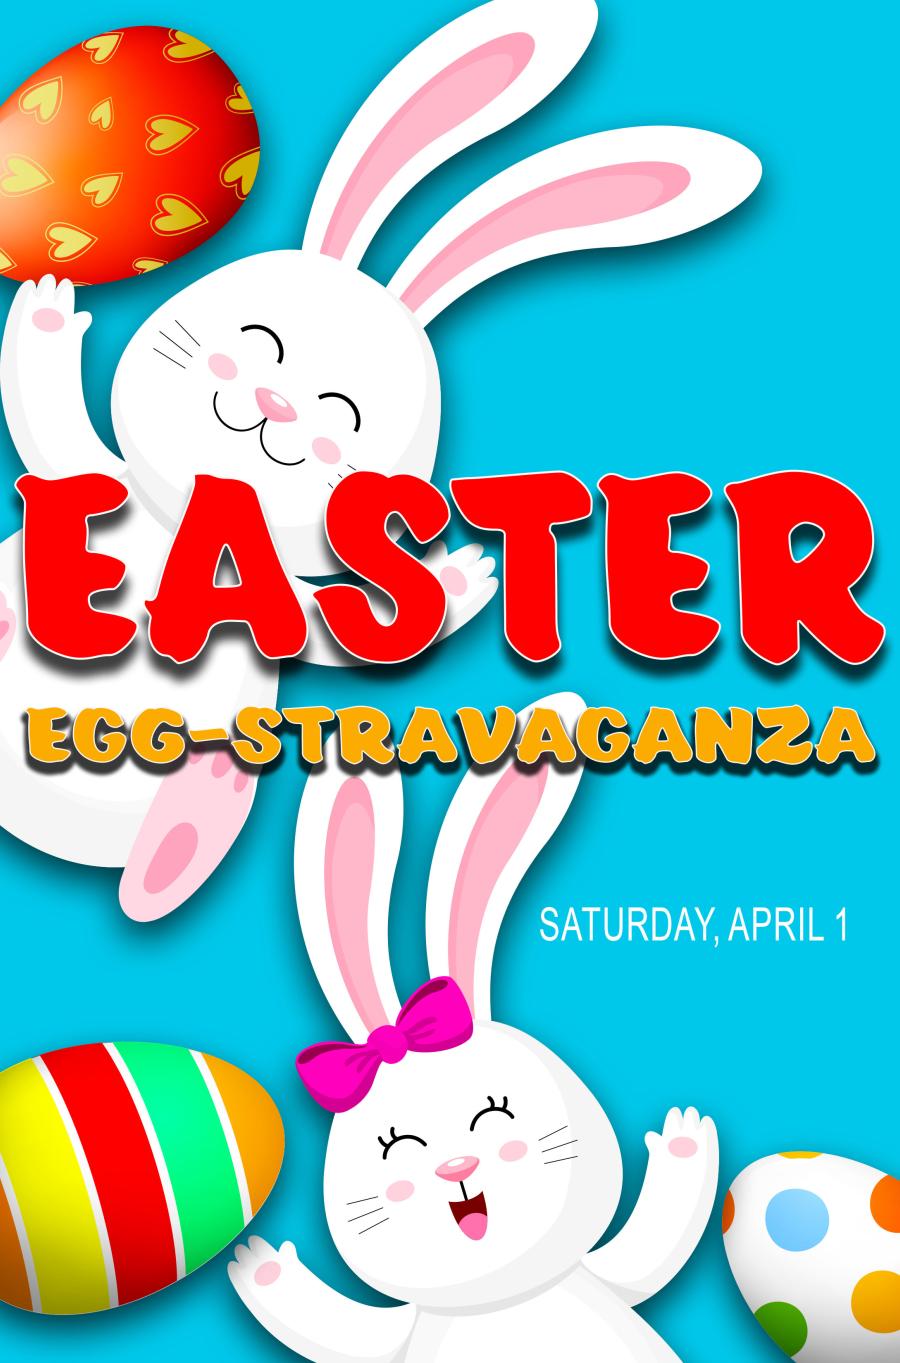 Easter_Egg-Stravaganza Flyer 2